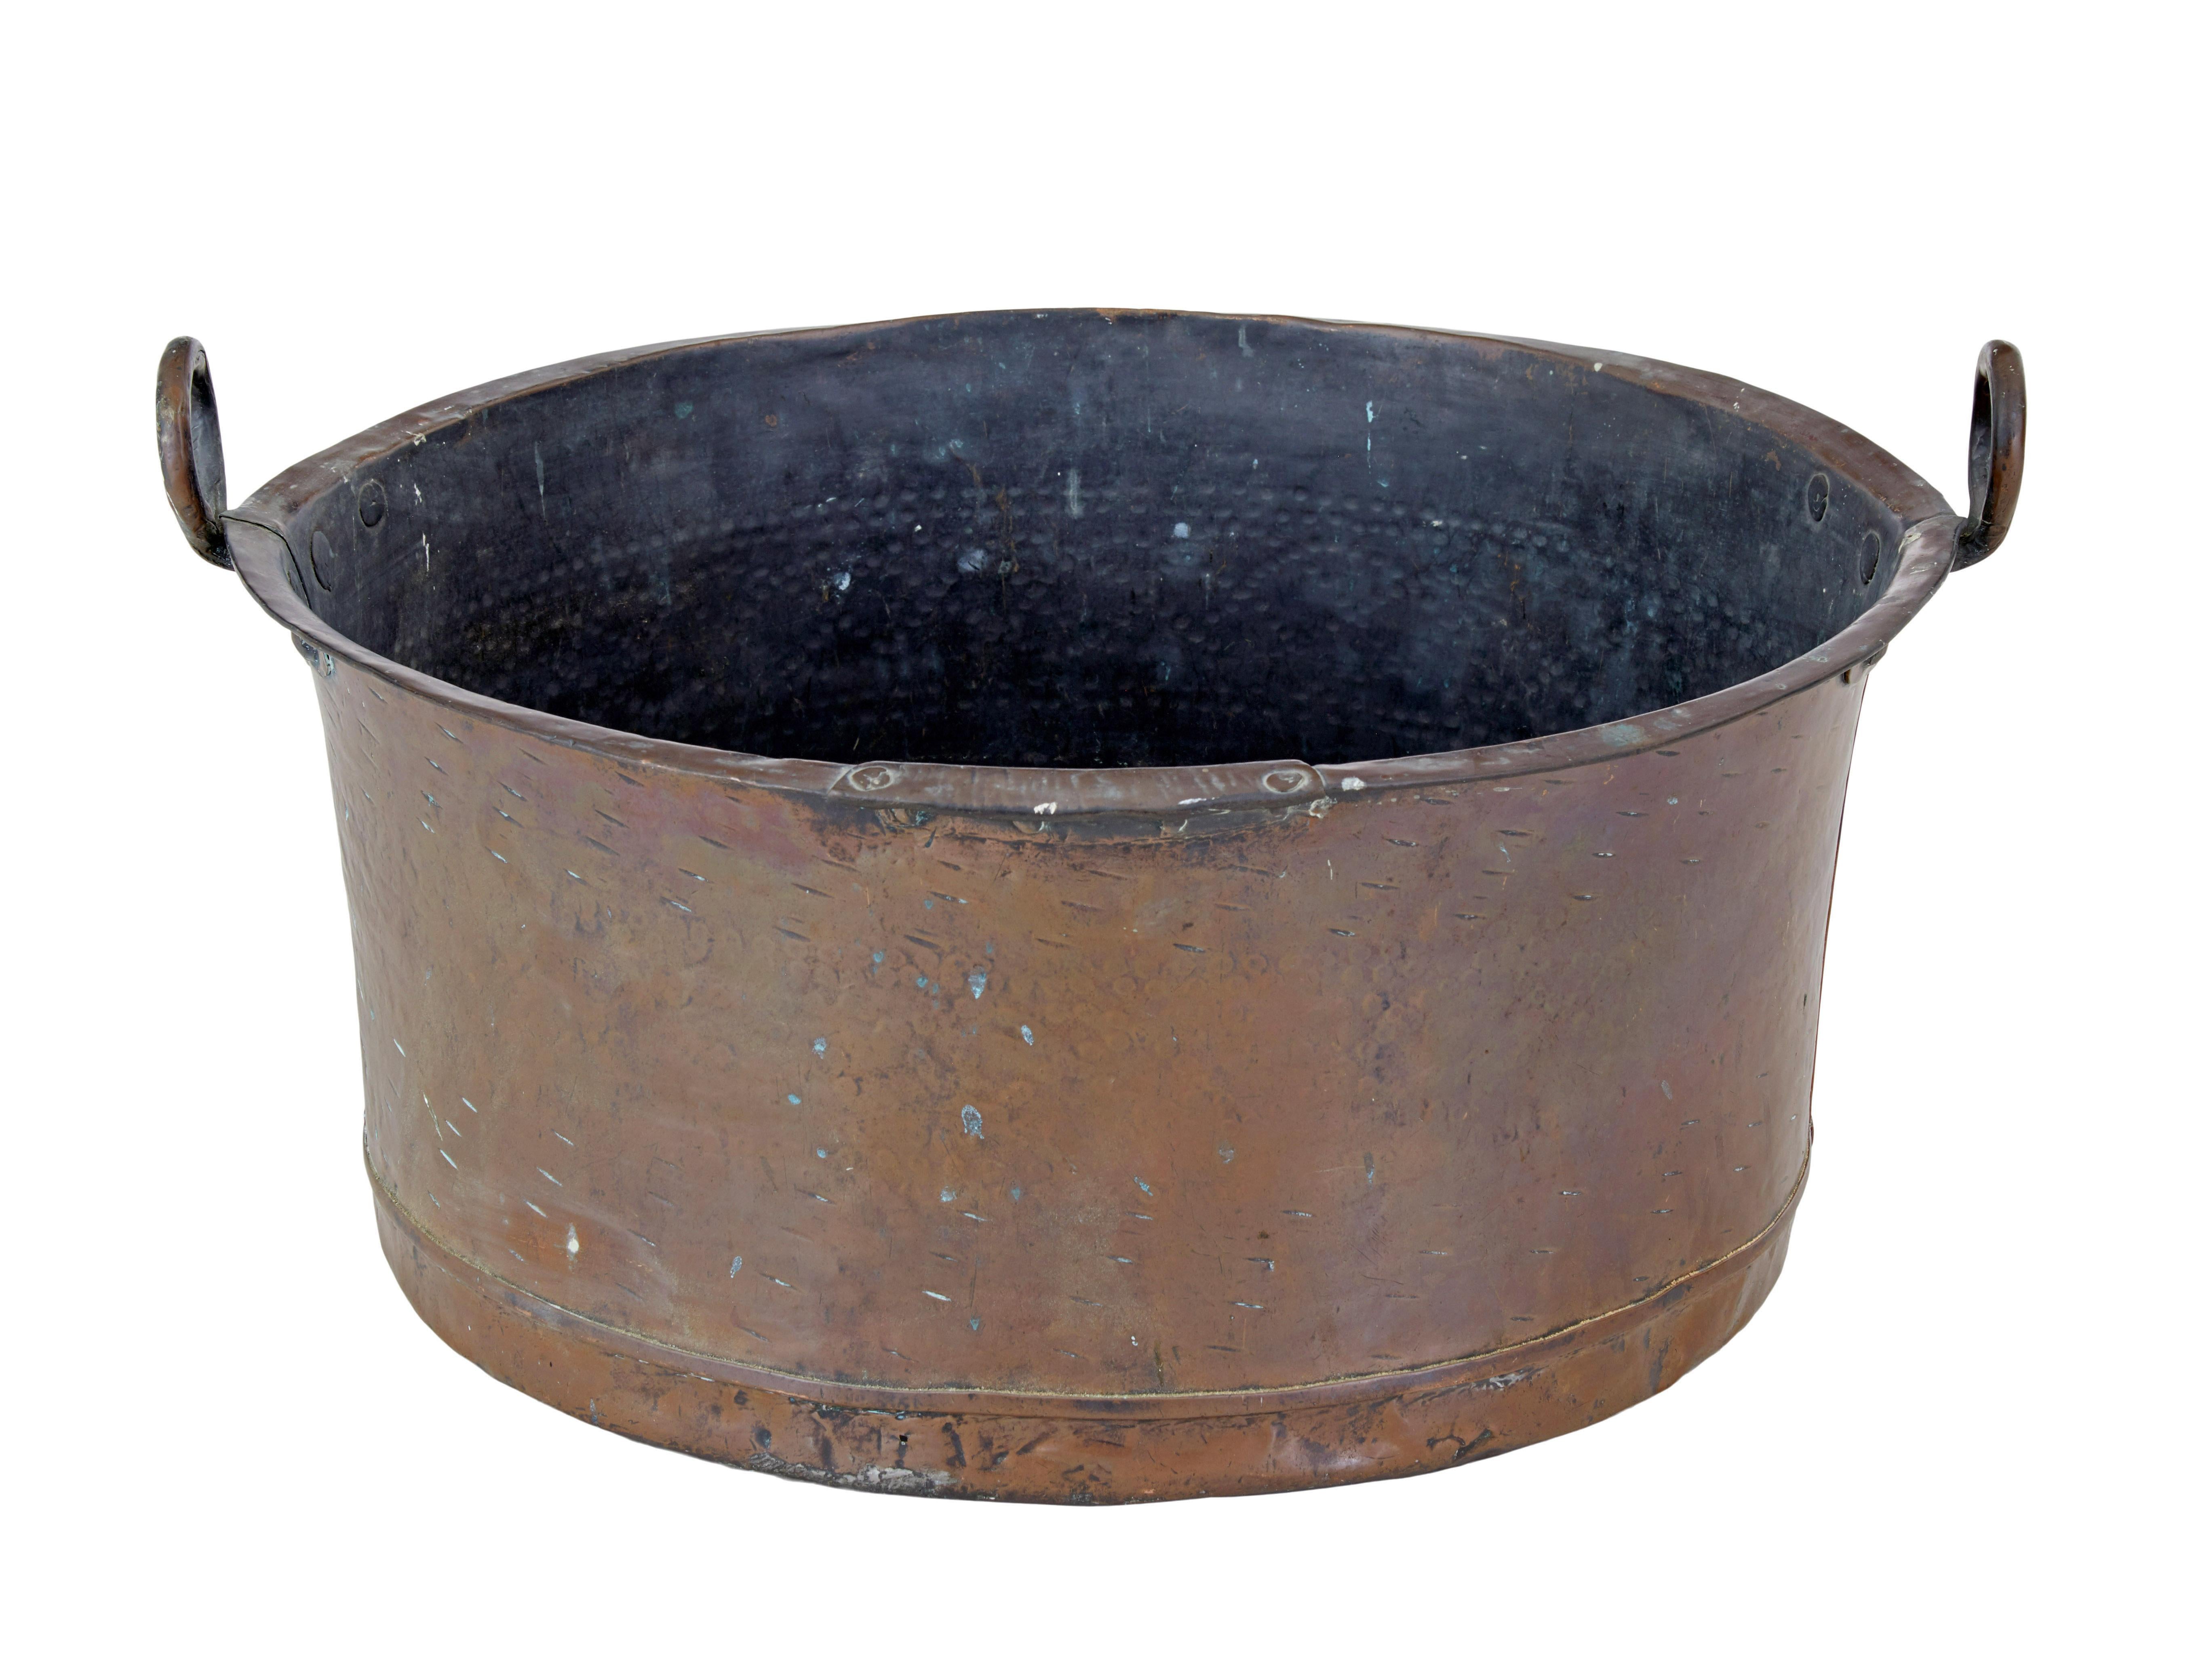 Großes Kupferkochgefäß aus dem 19. Jahrhundert, um 1890.

Großes Kochgefäß guter Qualität aus Kupfer mit eisernen Griffringen.

Ideal für die heutige Nutzung als Holzlager, für die Aufbewahrung im Flur oder vielleicht für die Umgestaltung zu einem